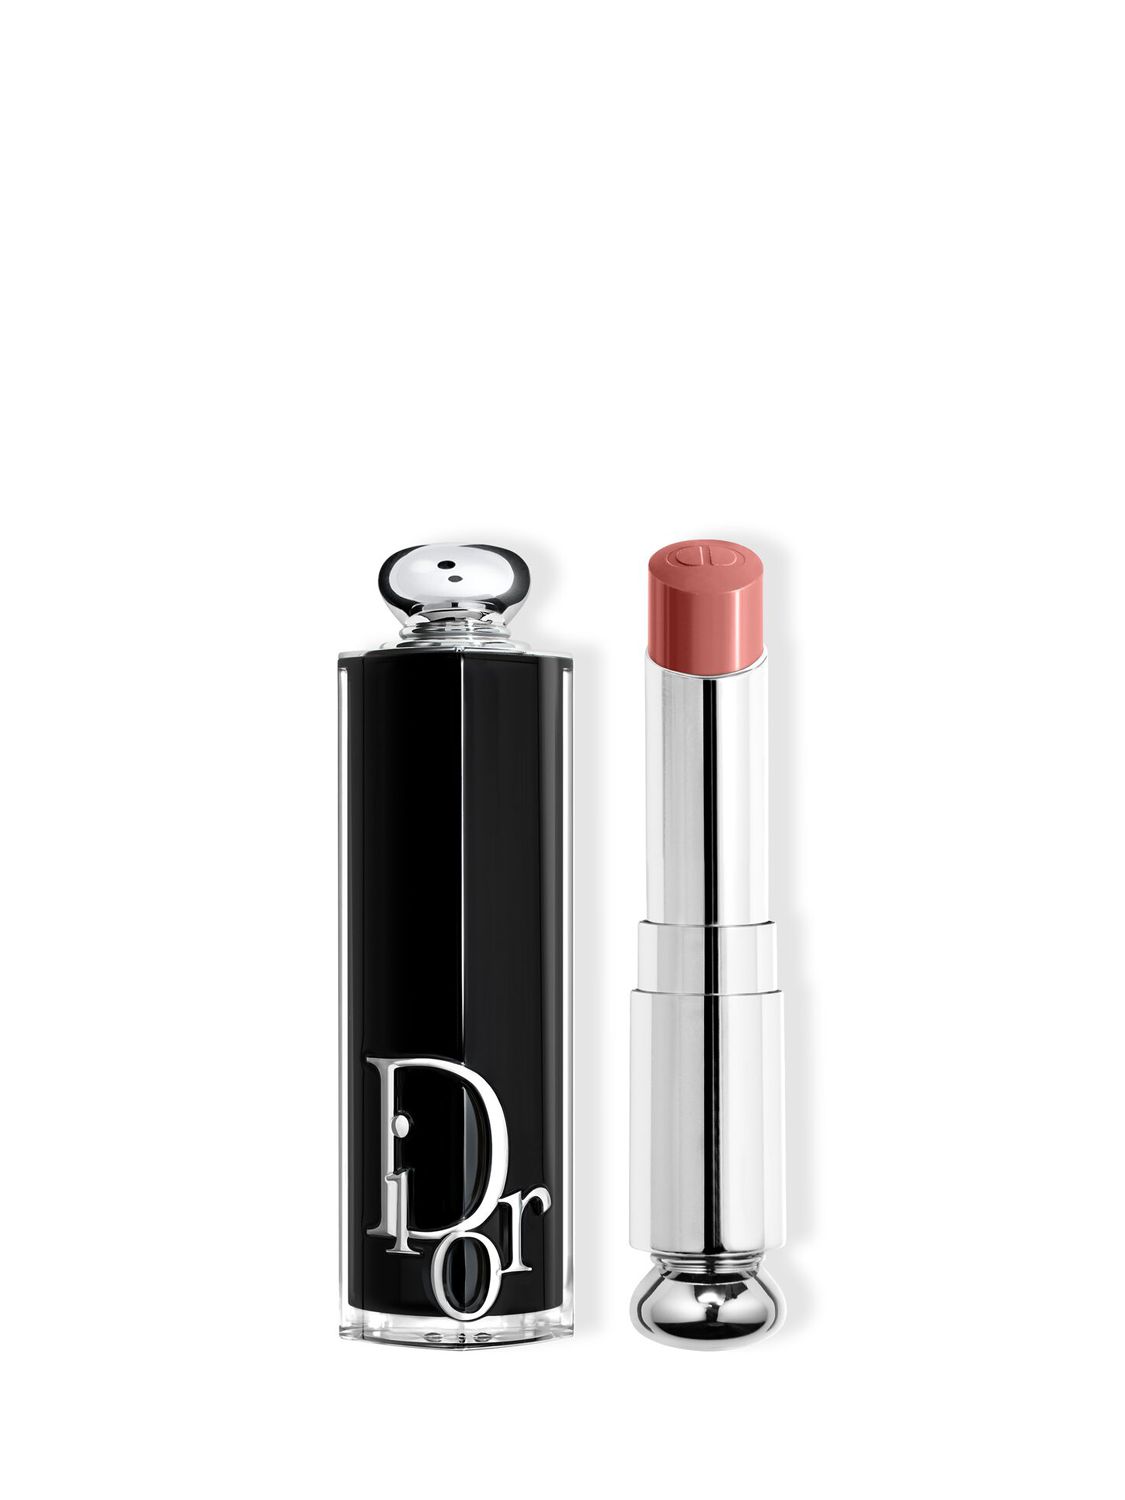 Dior.com Dior Dior Addict Case - Millefiori Couture Edition Lipstick case  28.00